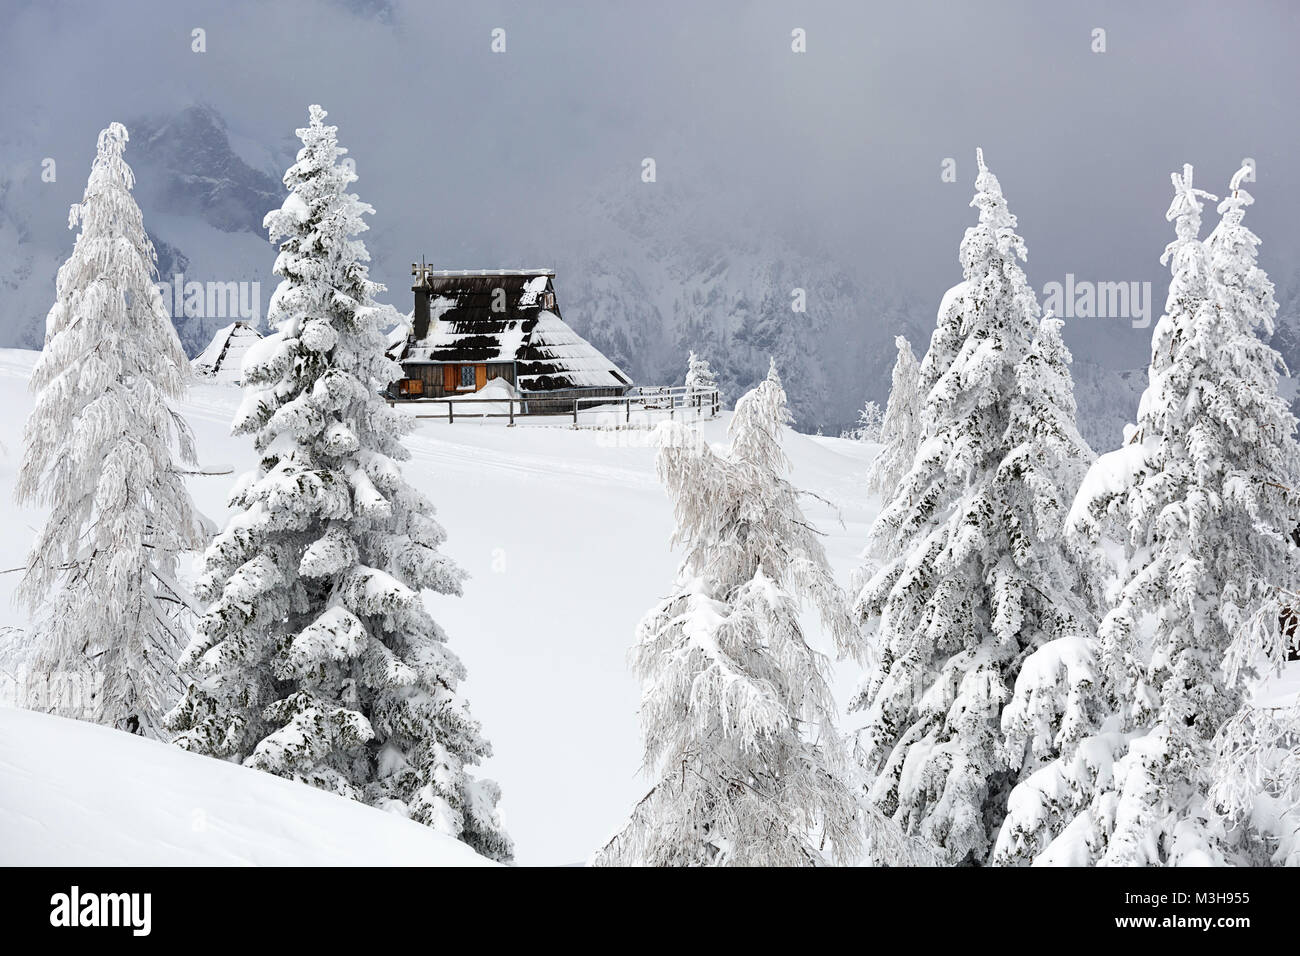 Chalet idyllique ancienne en bois recouvert de neige dans le paysage de montagne de Velika planina, la Slovénie. Banque D'Images